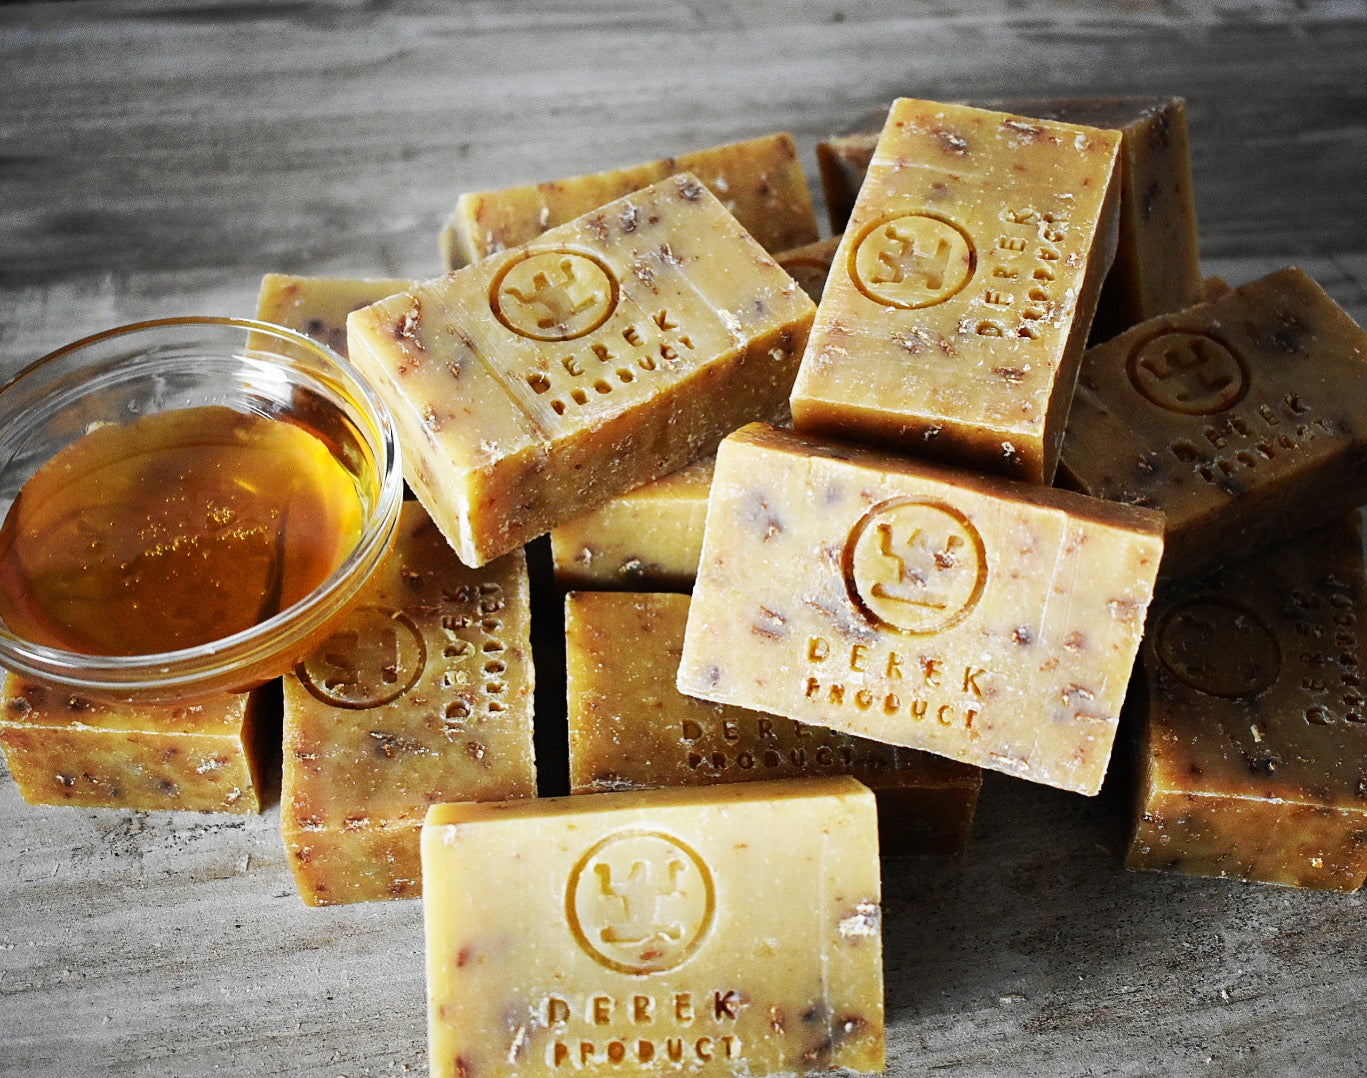 Honey Oatmeal Bar 3.75 oz (105g) - Soap for Sensitive Skin - Derek Product